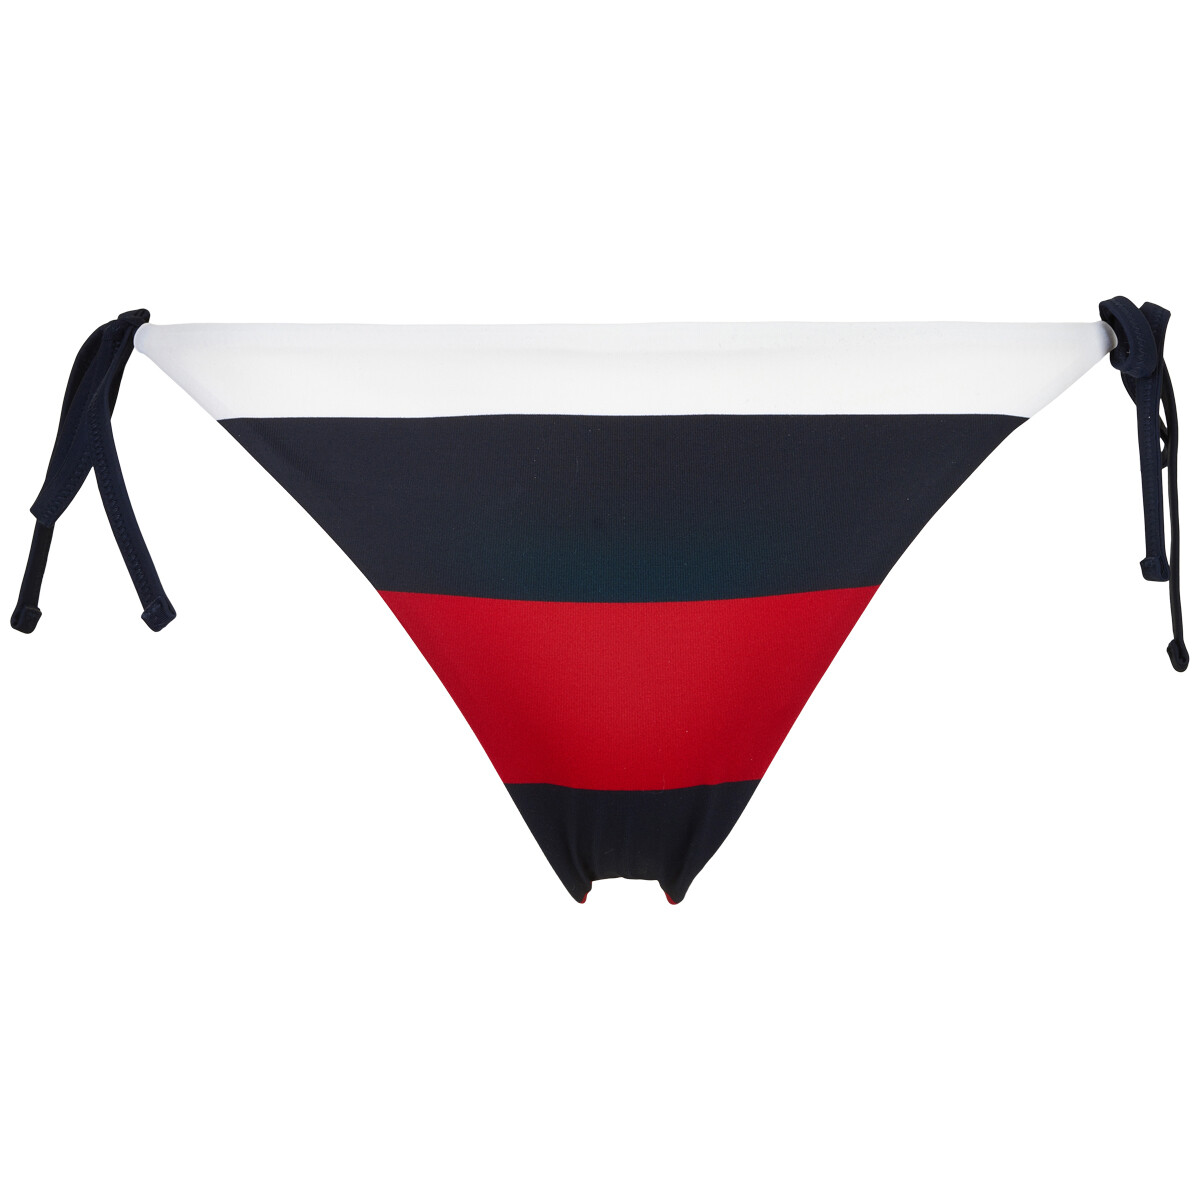 Tommy Hilfiger Side Tie Cheeky G-streng Bikini Trusse, Farve: Rugby Stripe, Størrelse: S, Dame